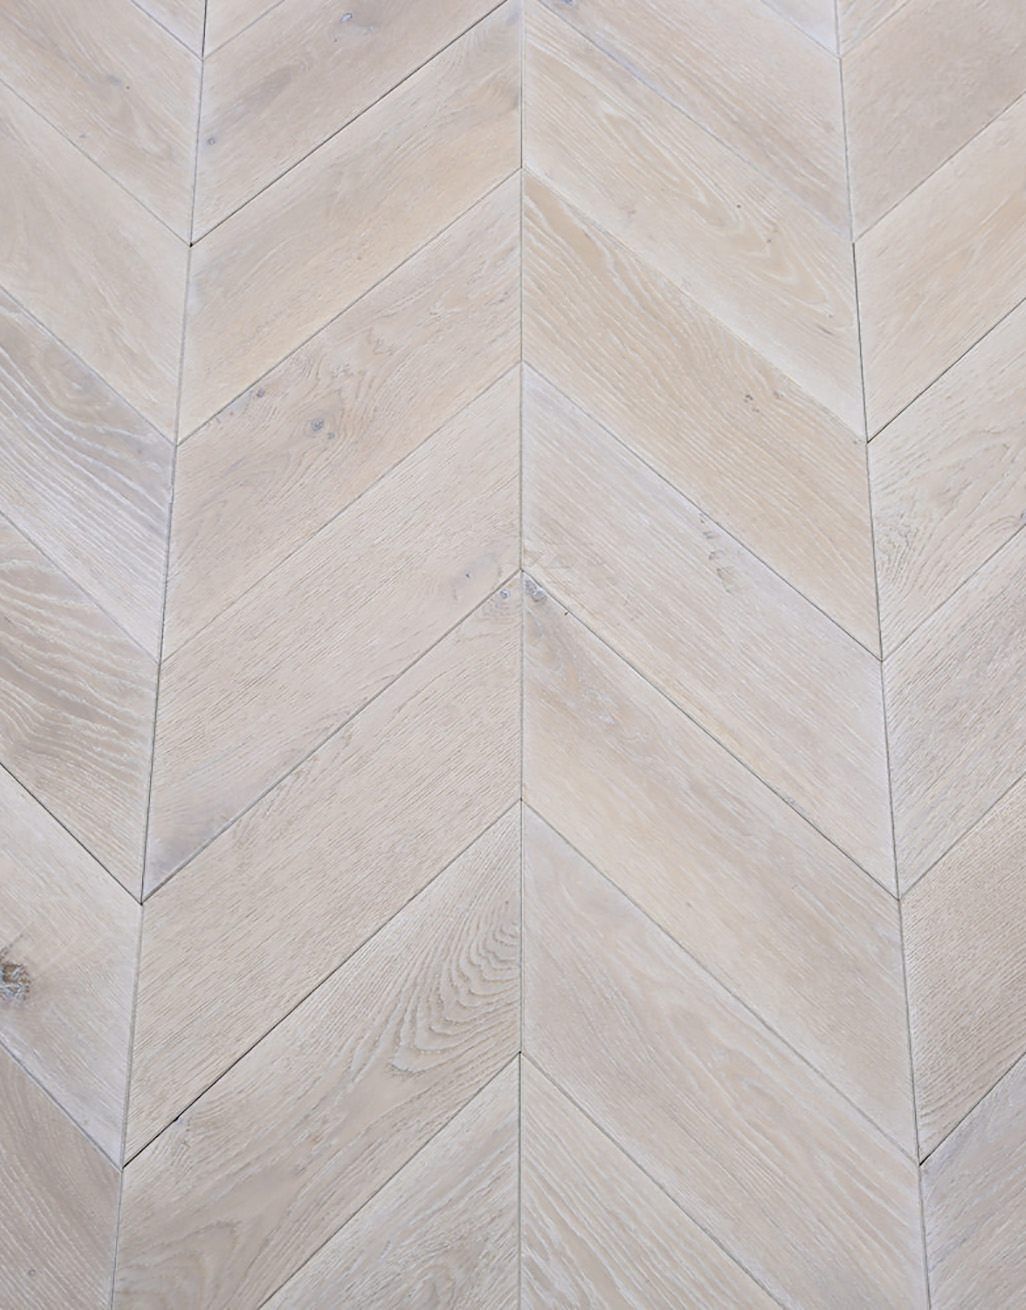 Whitewashed Oak Chevron Solid Wood, White Washed Wood Ceramic Tile